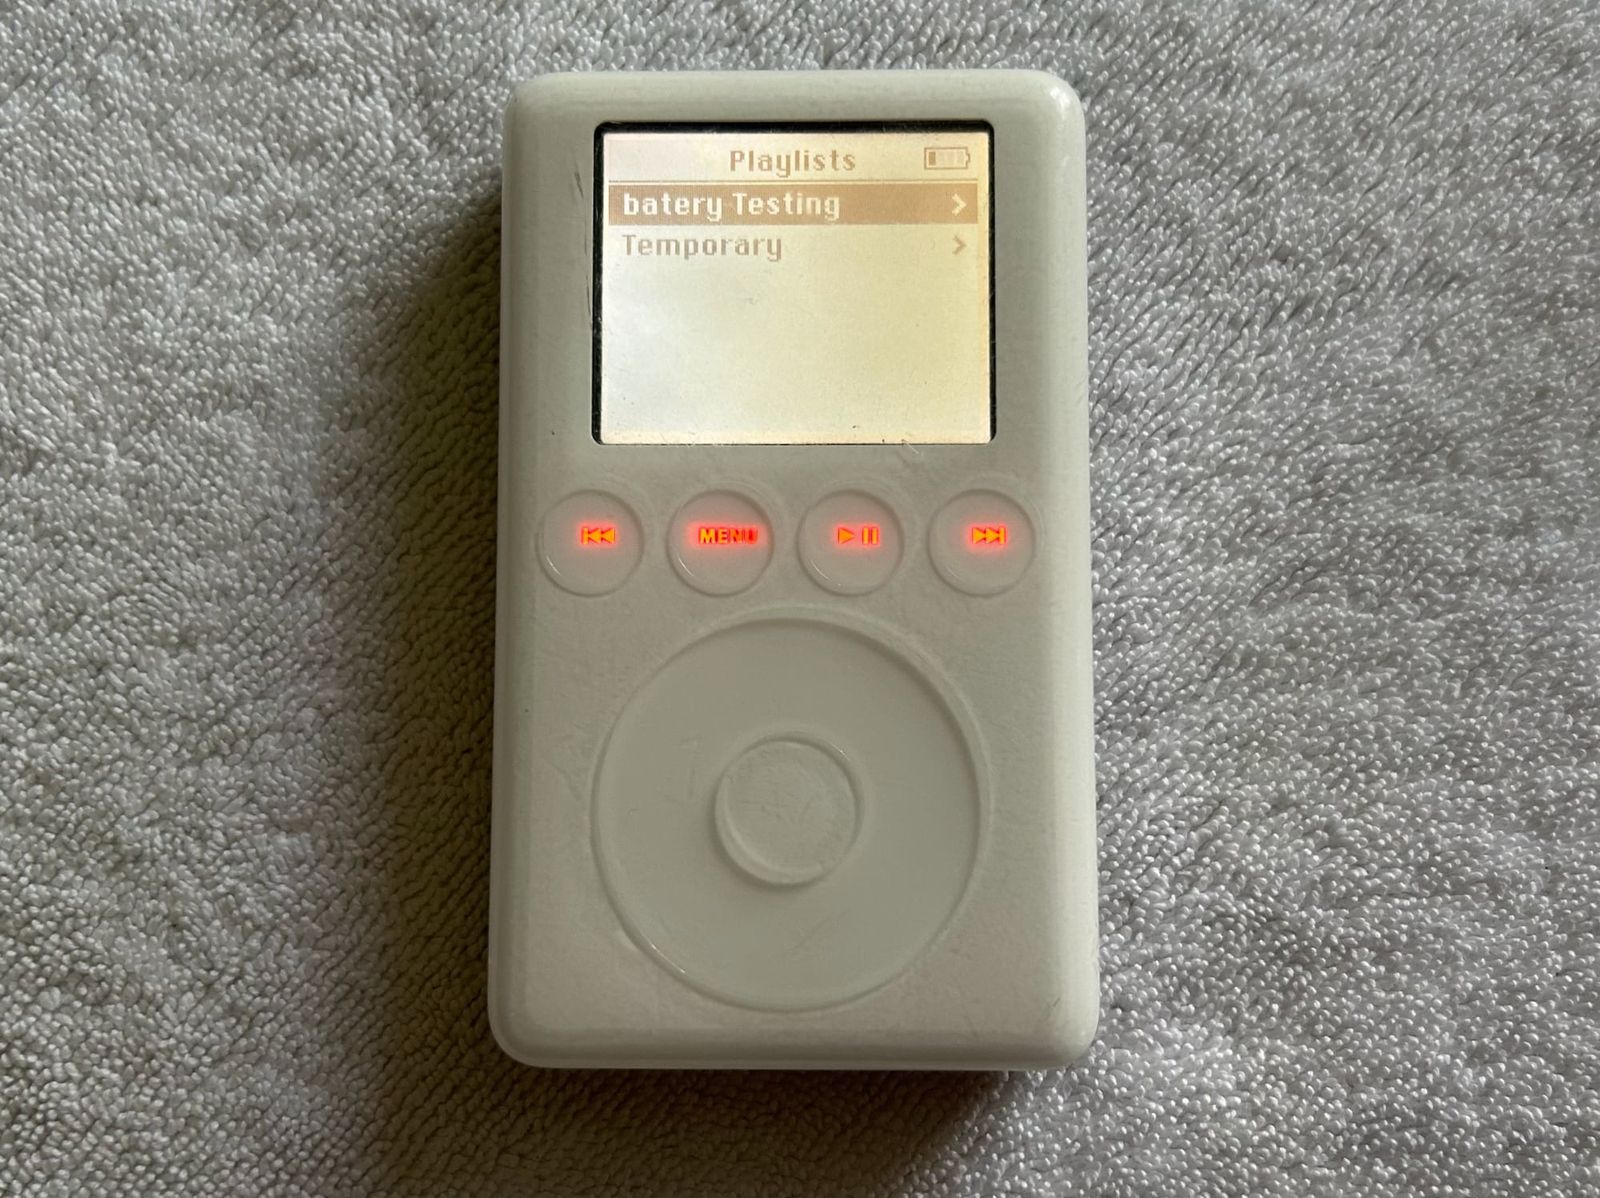 Прототип iPod включает разработанный Apple клон Tetris под названием Stacker